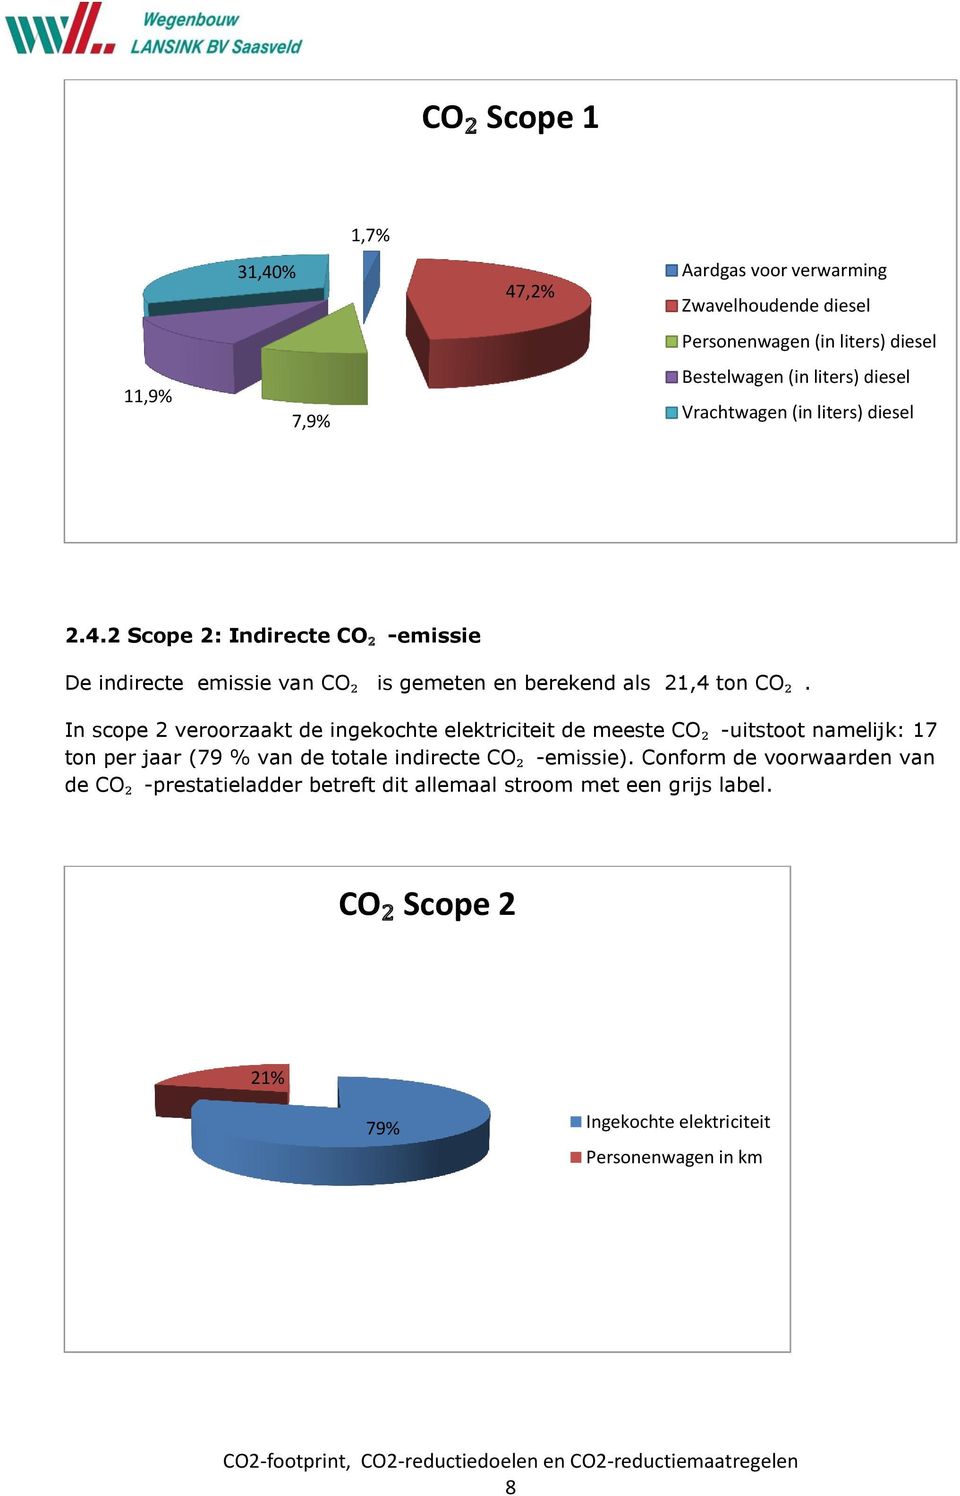 In scope 2 veroorzaakt de ingekochte elektriciteit de meeste CO₂ -uitstoot namelijk: 17 ton per jaar (79 % van de totale indirecte CO₂ -emissie).